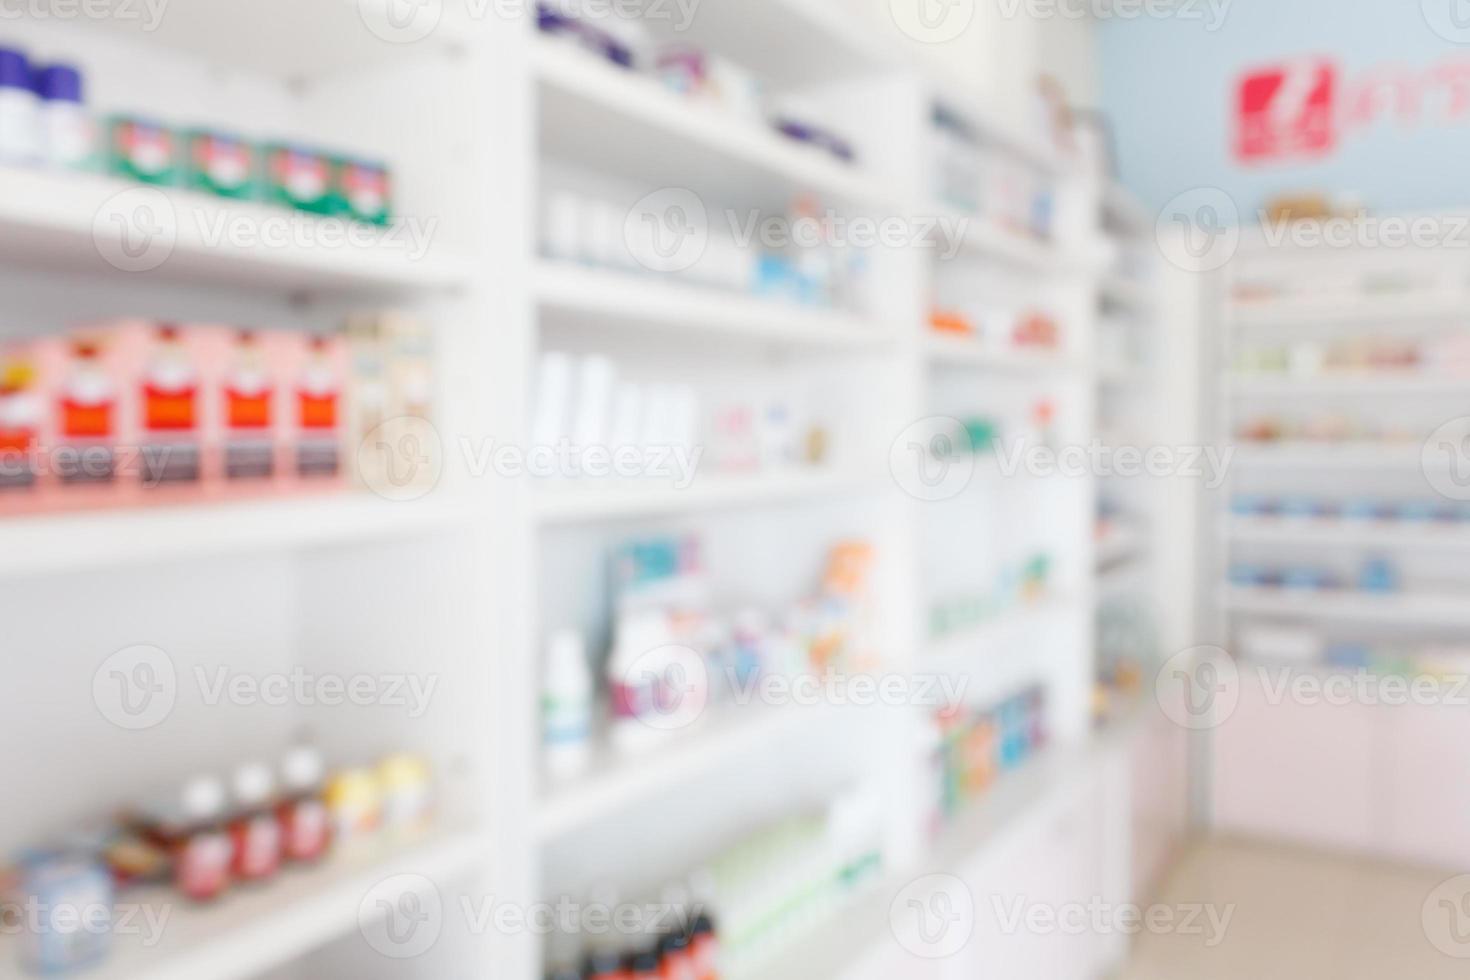 farmacia farmacia desenfoque de fondo abstracto con medicamentos y productos sanitarios en los estantes foto